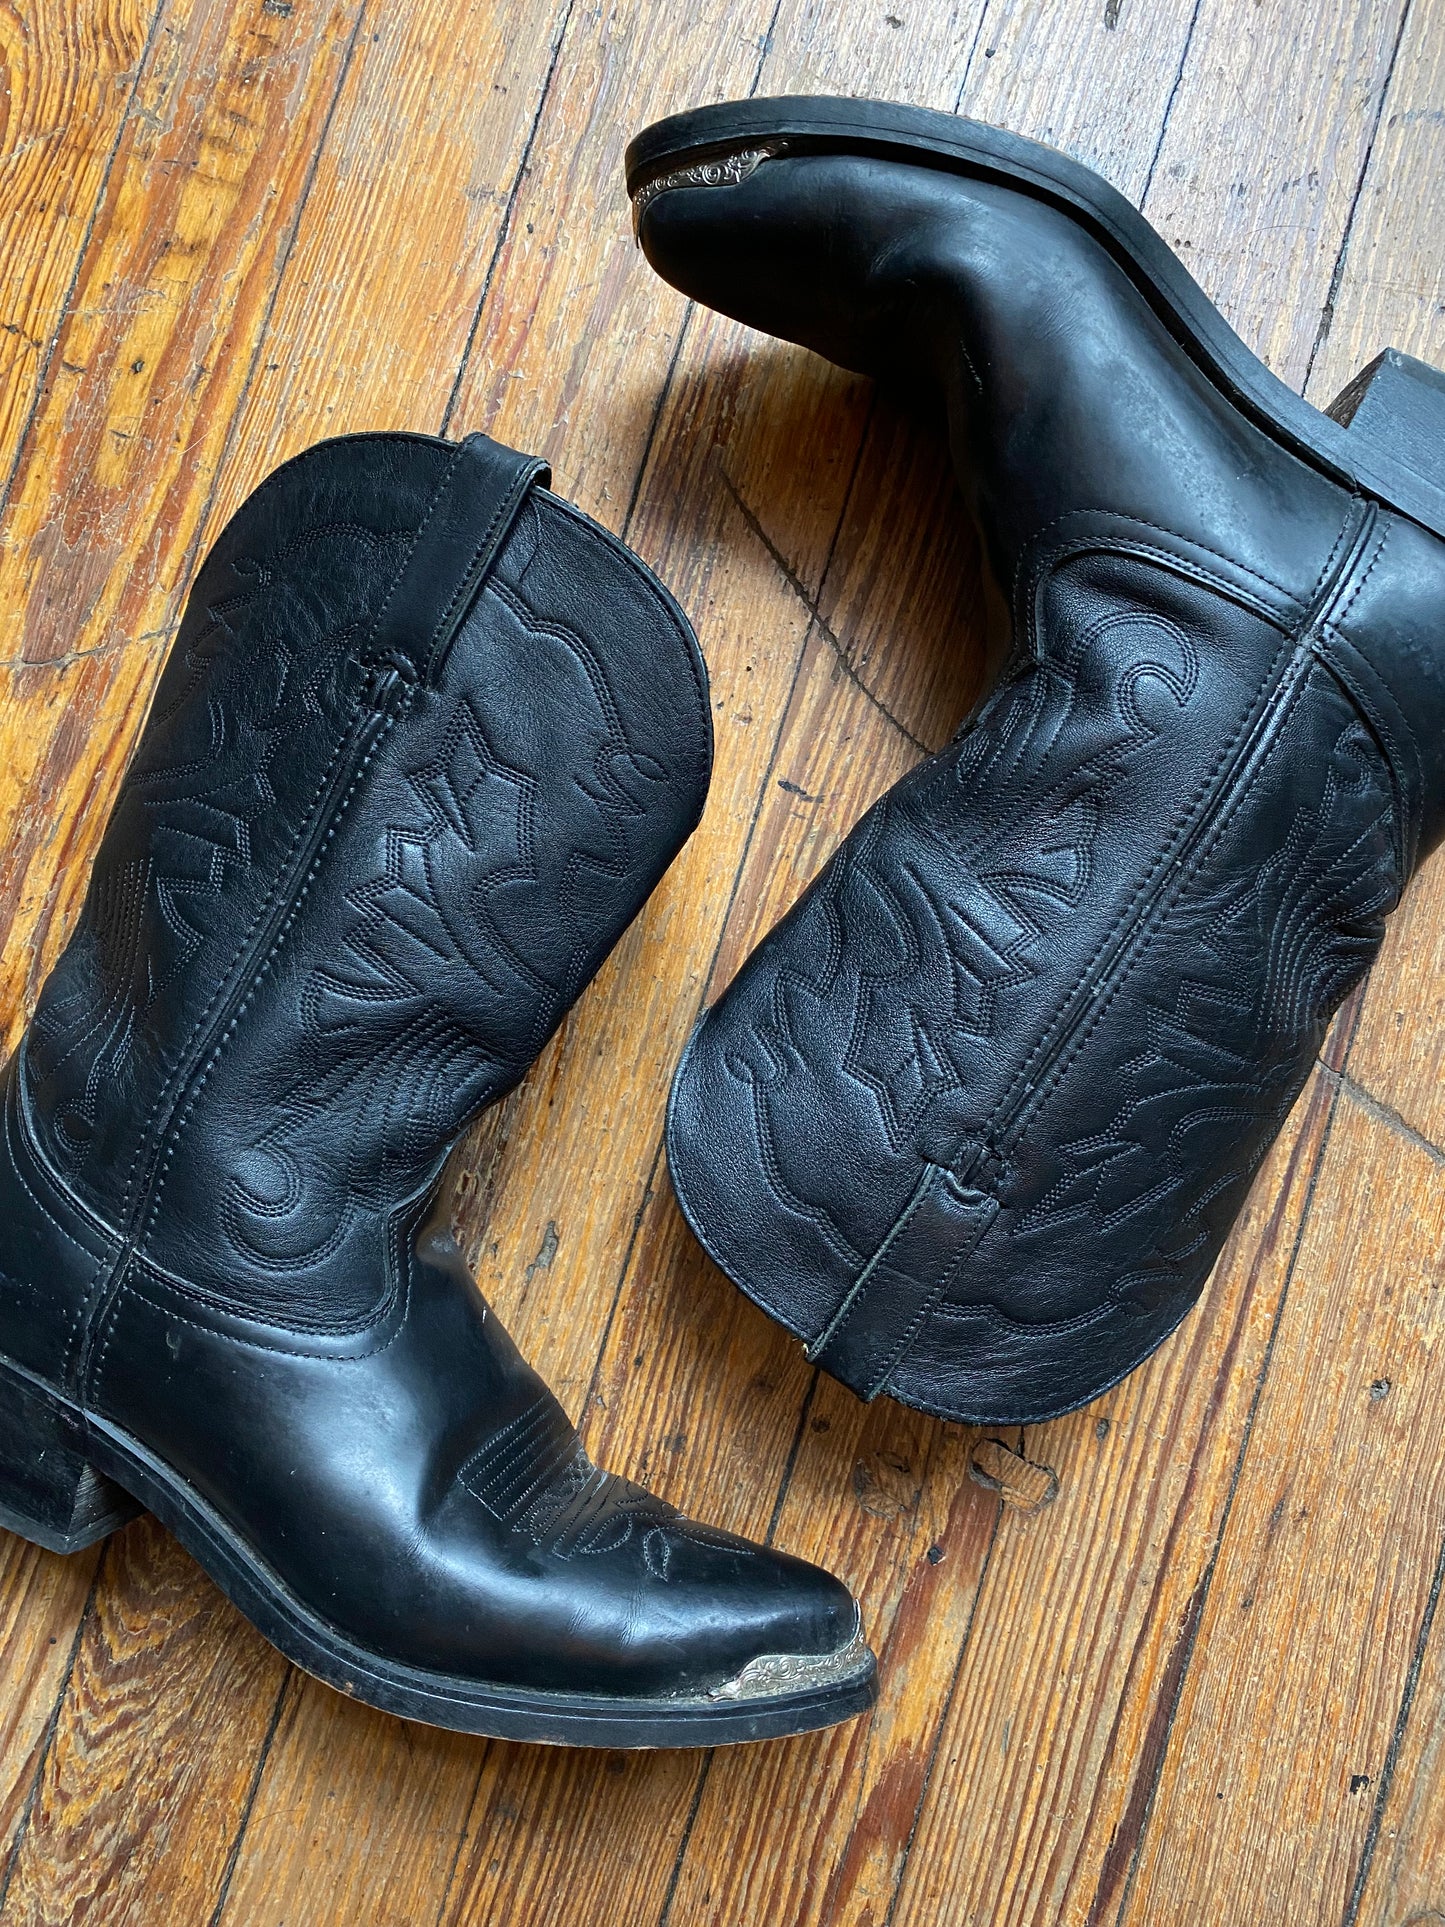 Vintage Durango Silver Tip Cowboy Boots